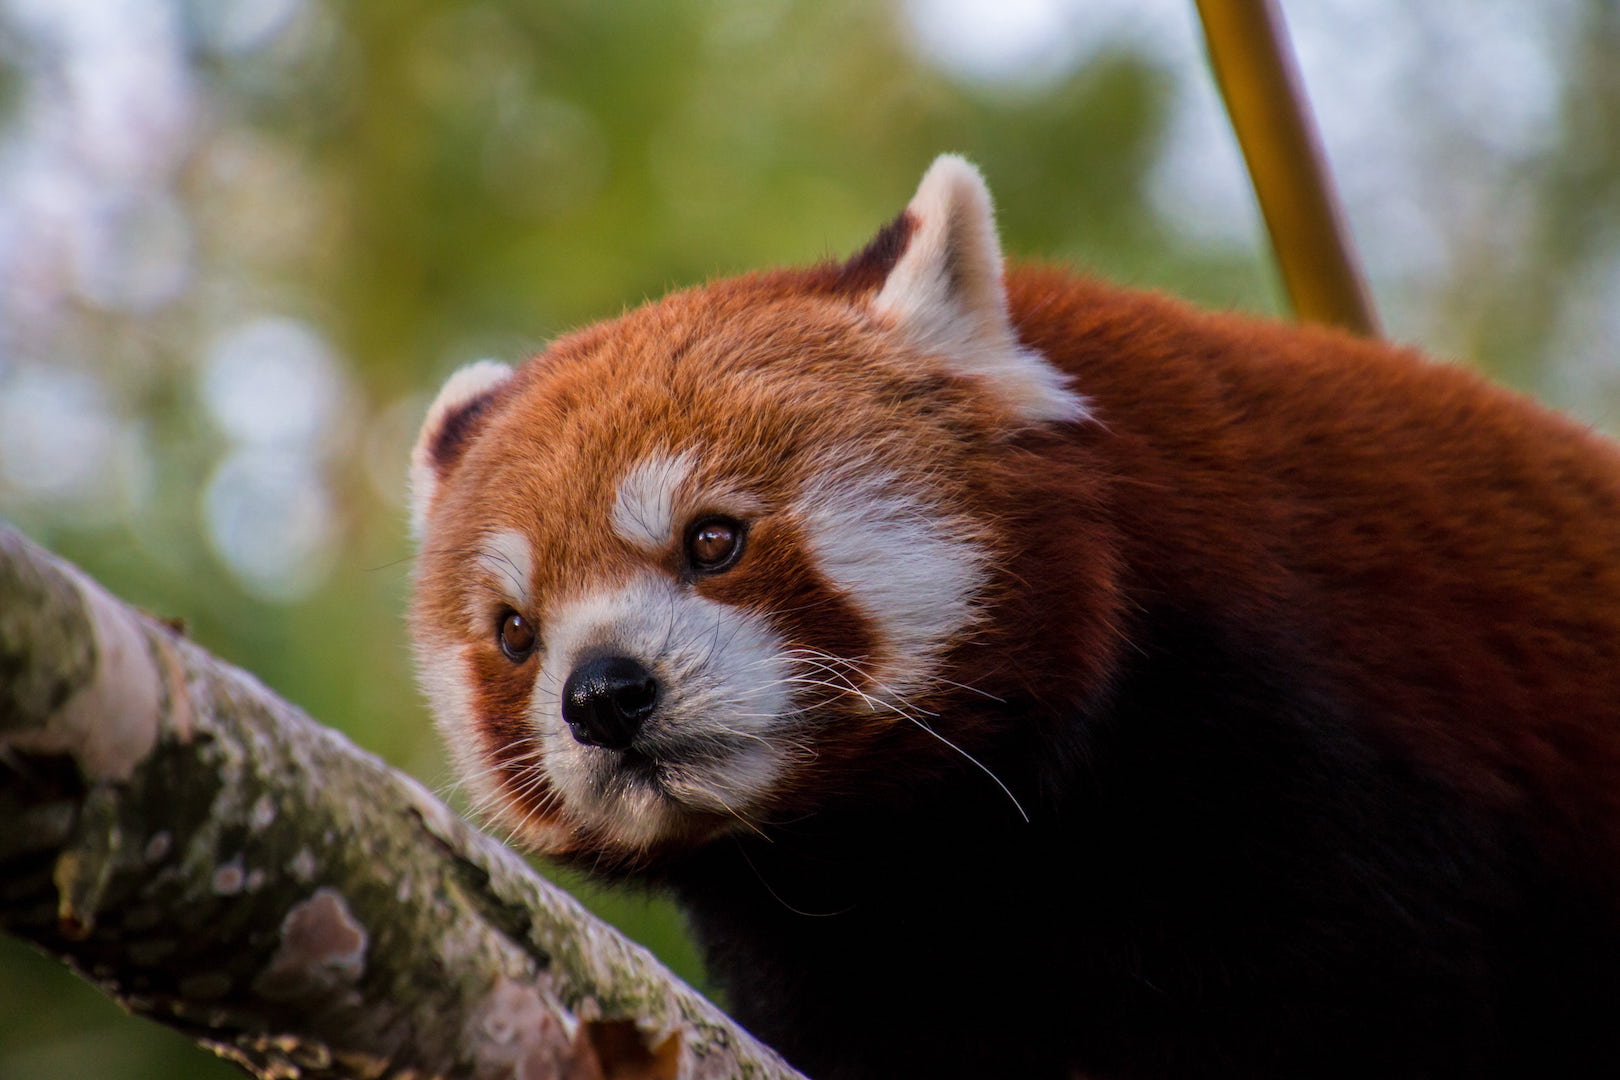 Red panda looking determined